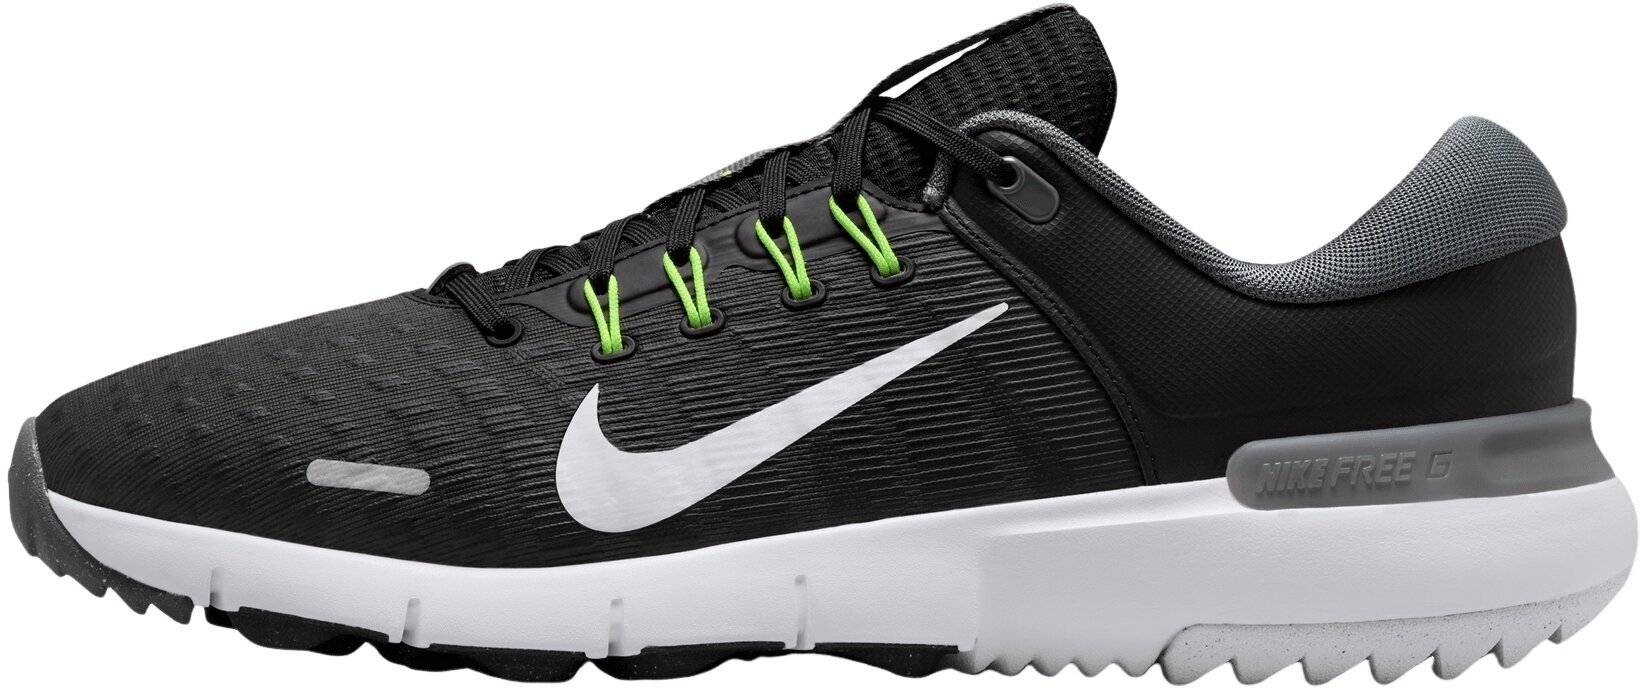 Calçado de golfe para homem Nike Free Golf Unisex Shoes Black/White/Iron Grey/Volt 46